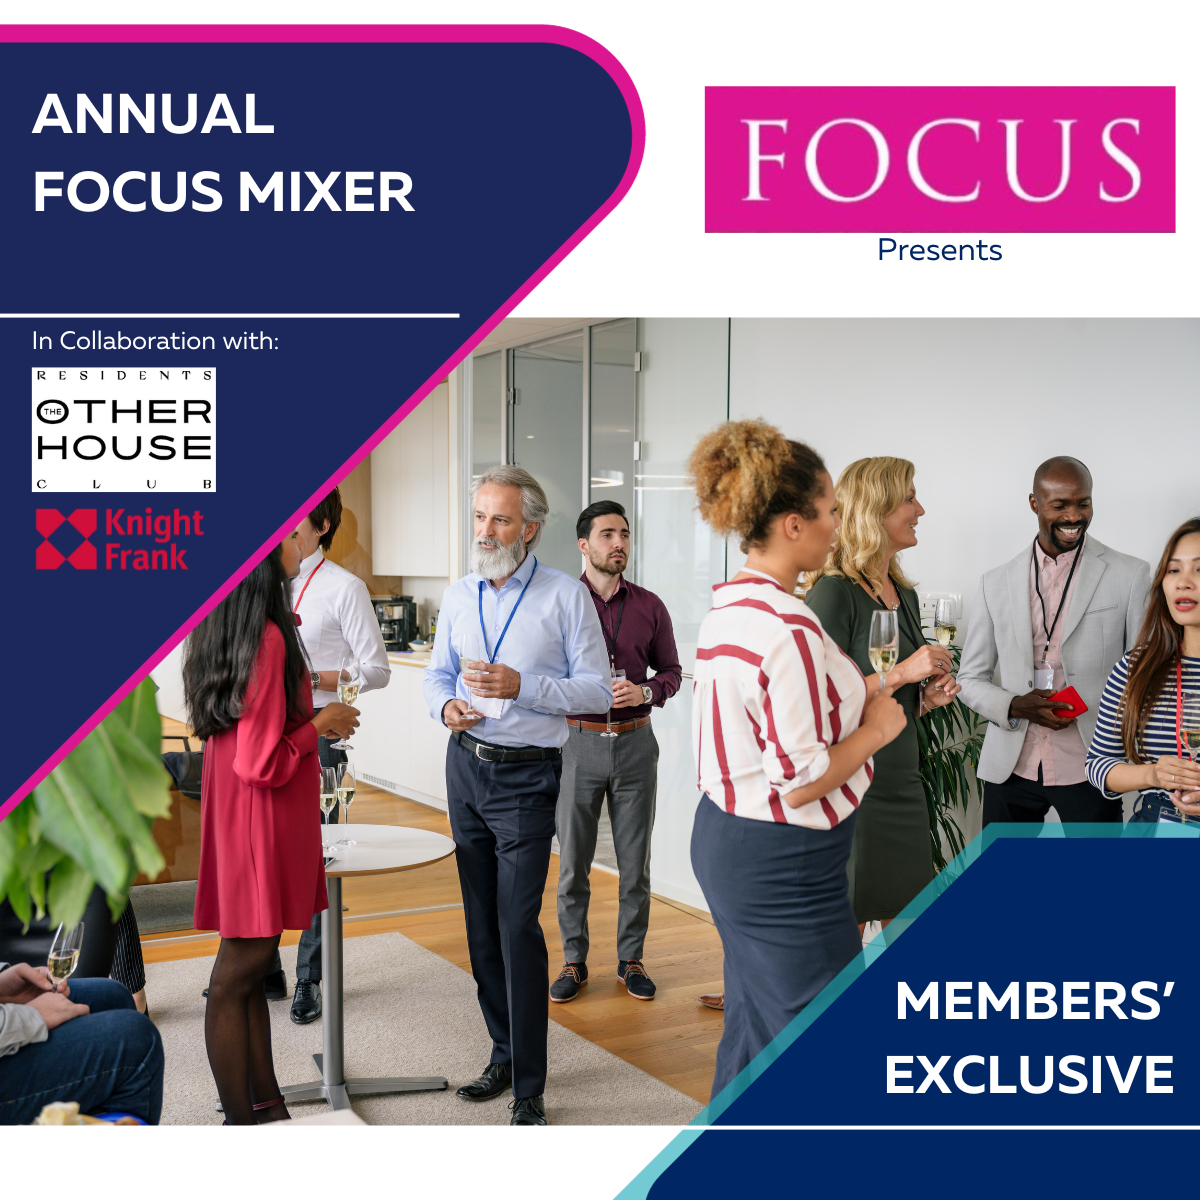 FOCUS Event - FOCUS annual mixer